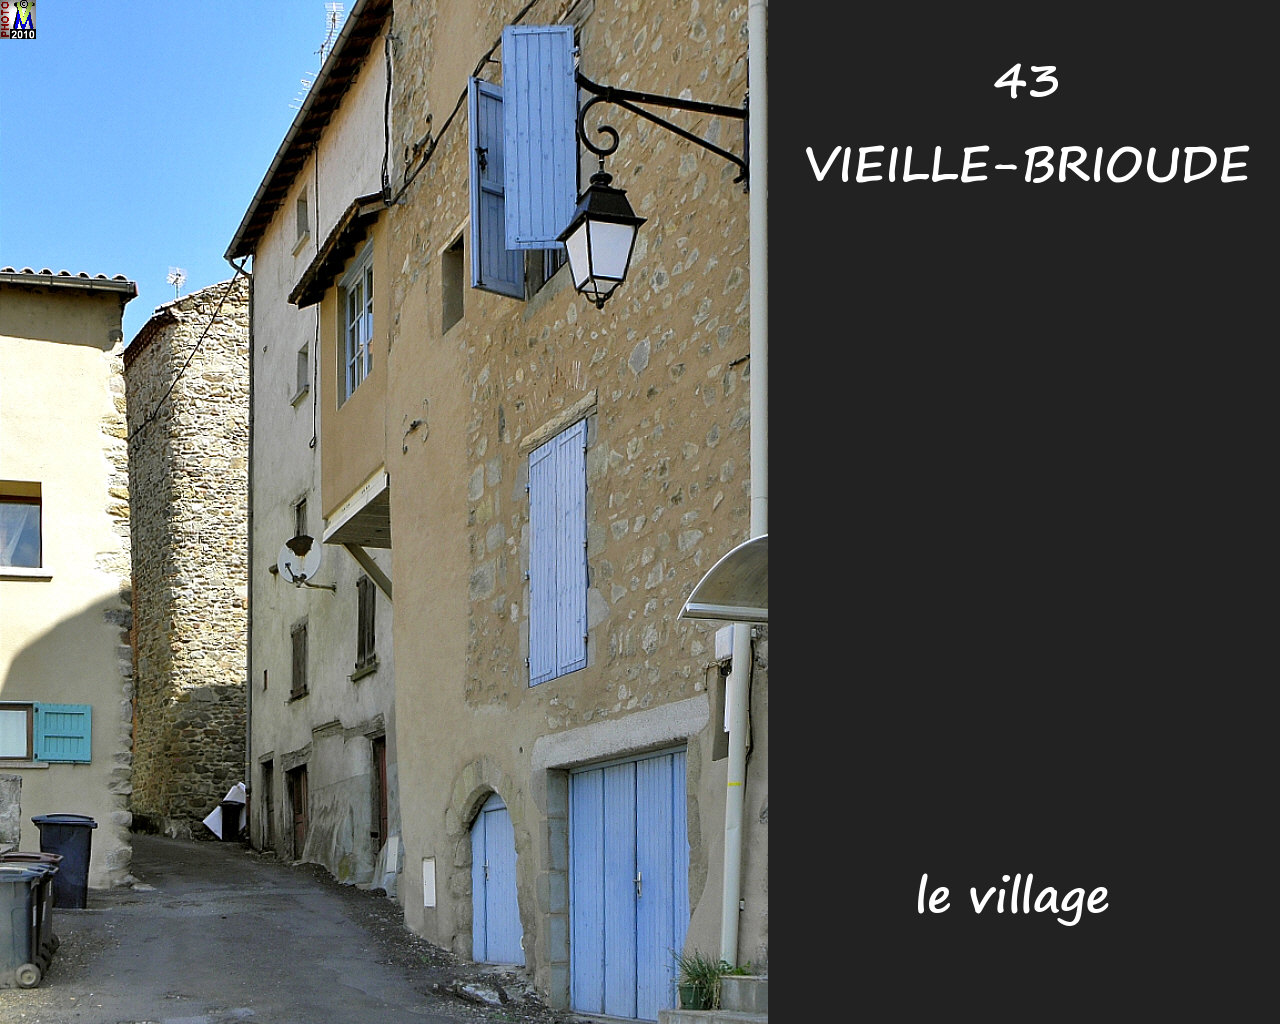 43VIEILLE-BRIOUDE_village_136.jpg